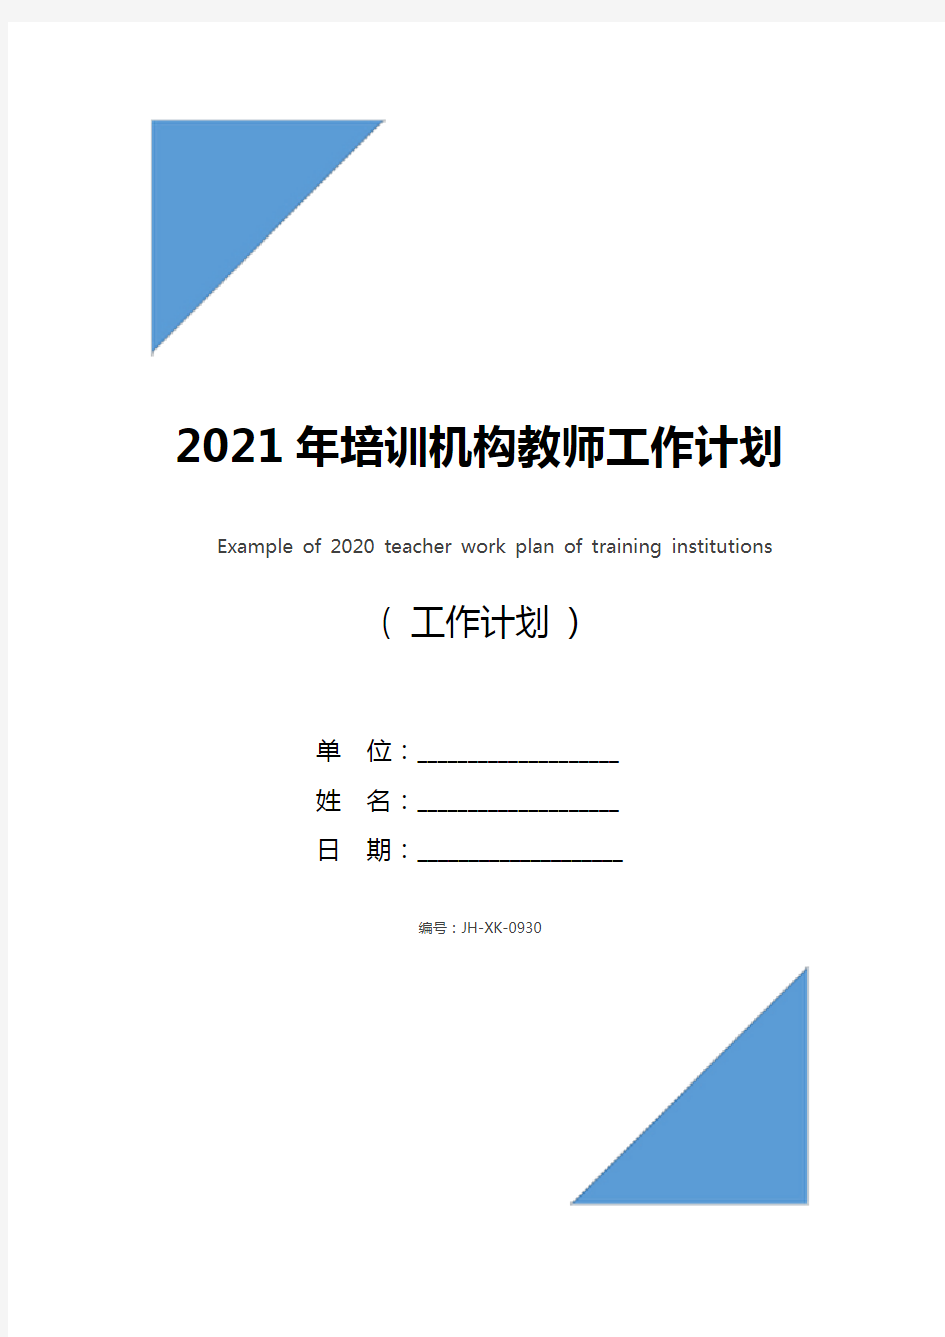 2021年培训机构教师工作计划书范例(最新版)